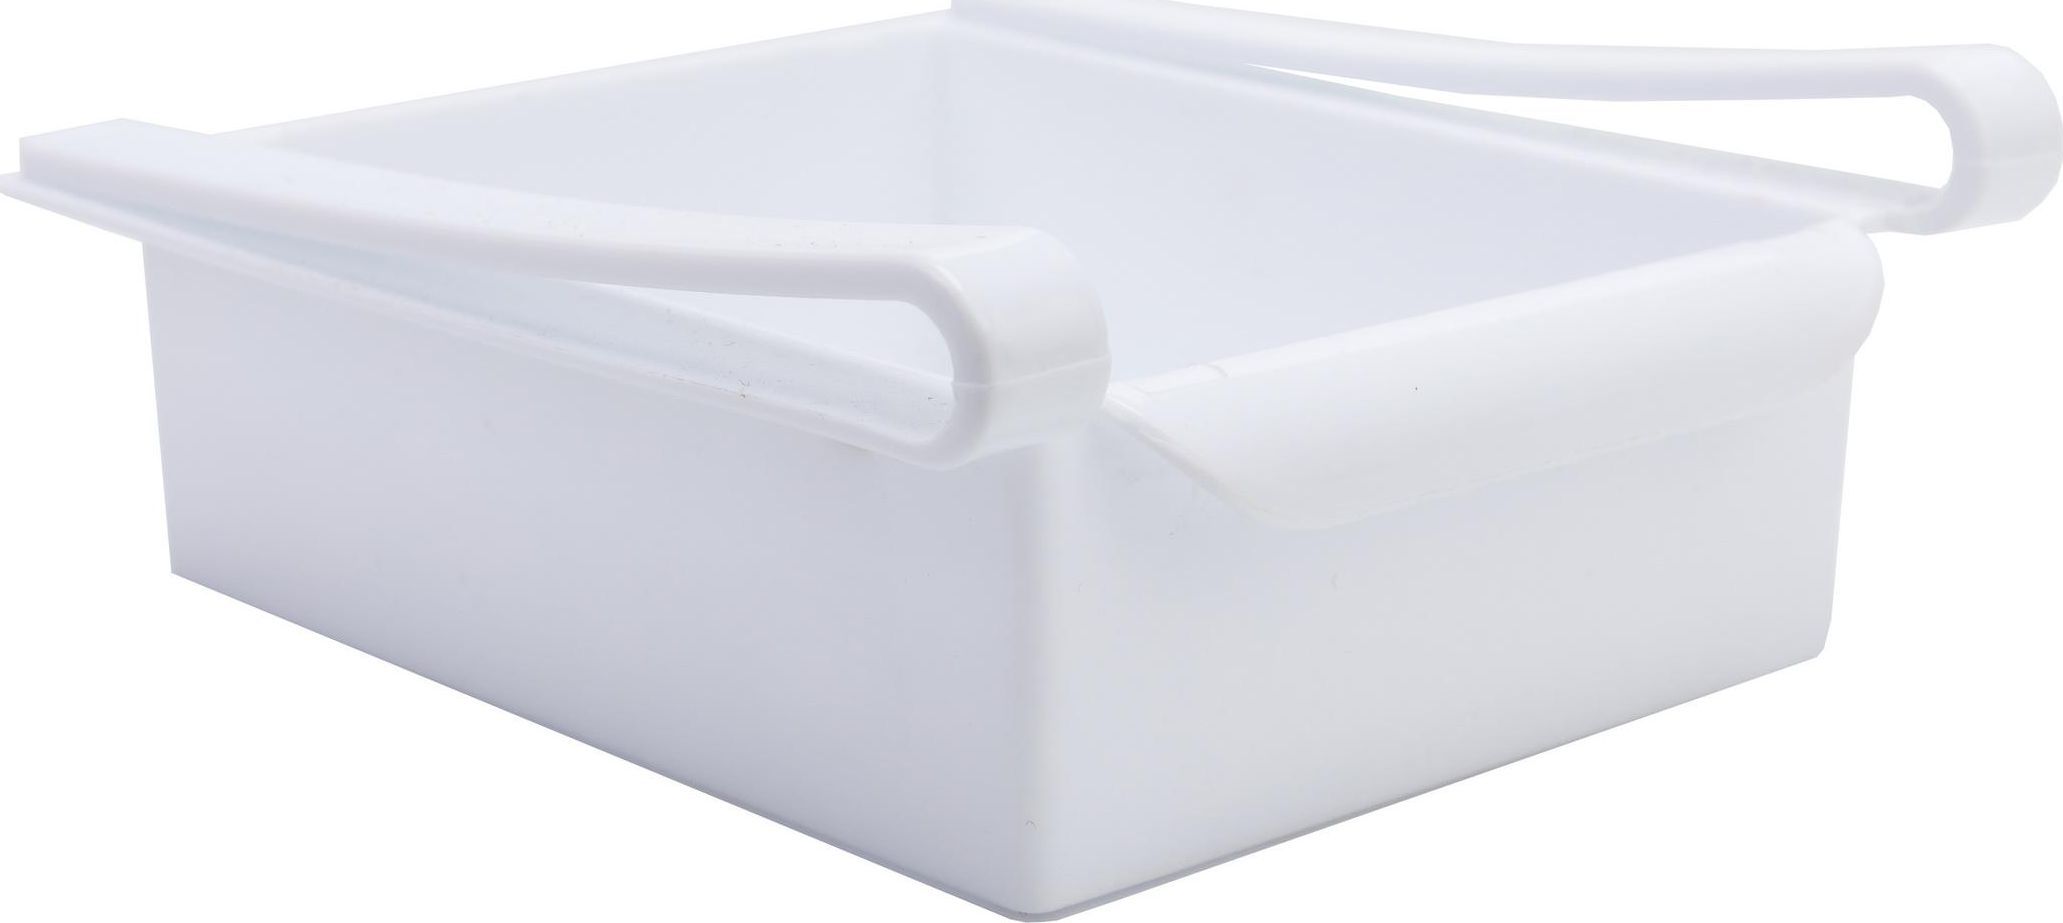 Полка для холодильника, 15,5 х16,5 х7 см, BRADEX, полистирол, белая